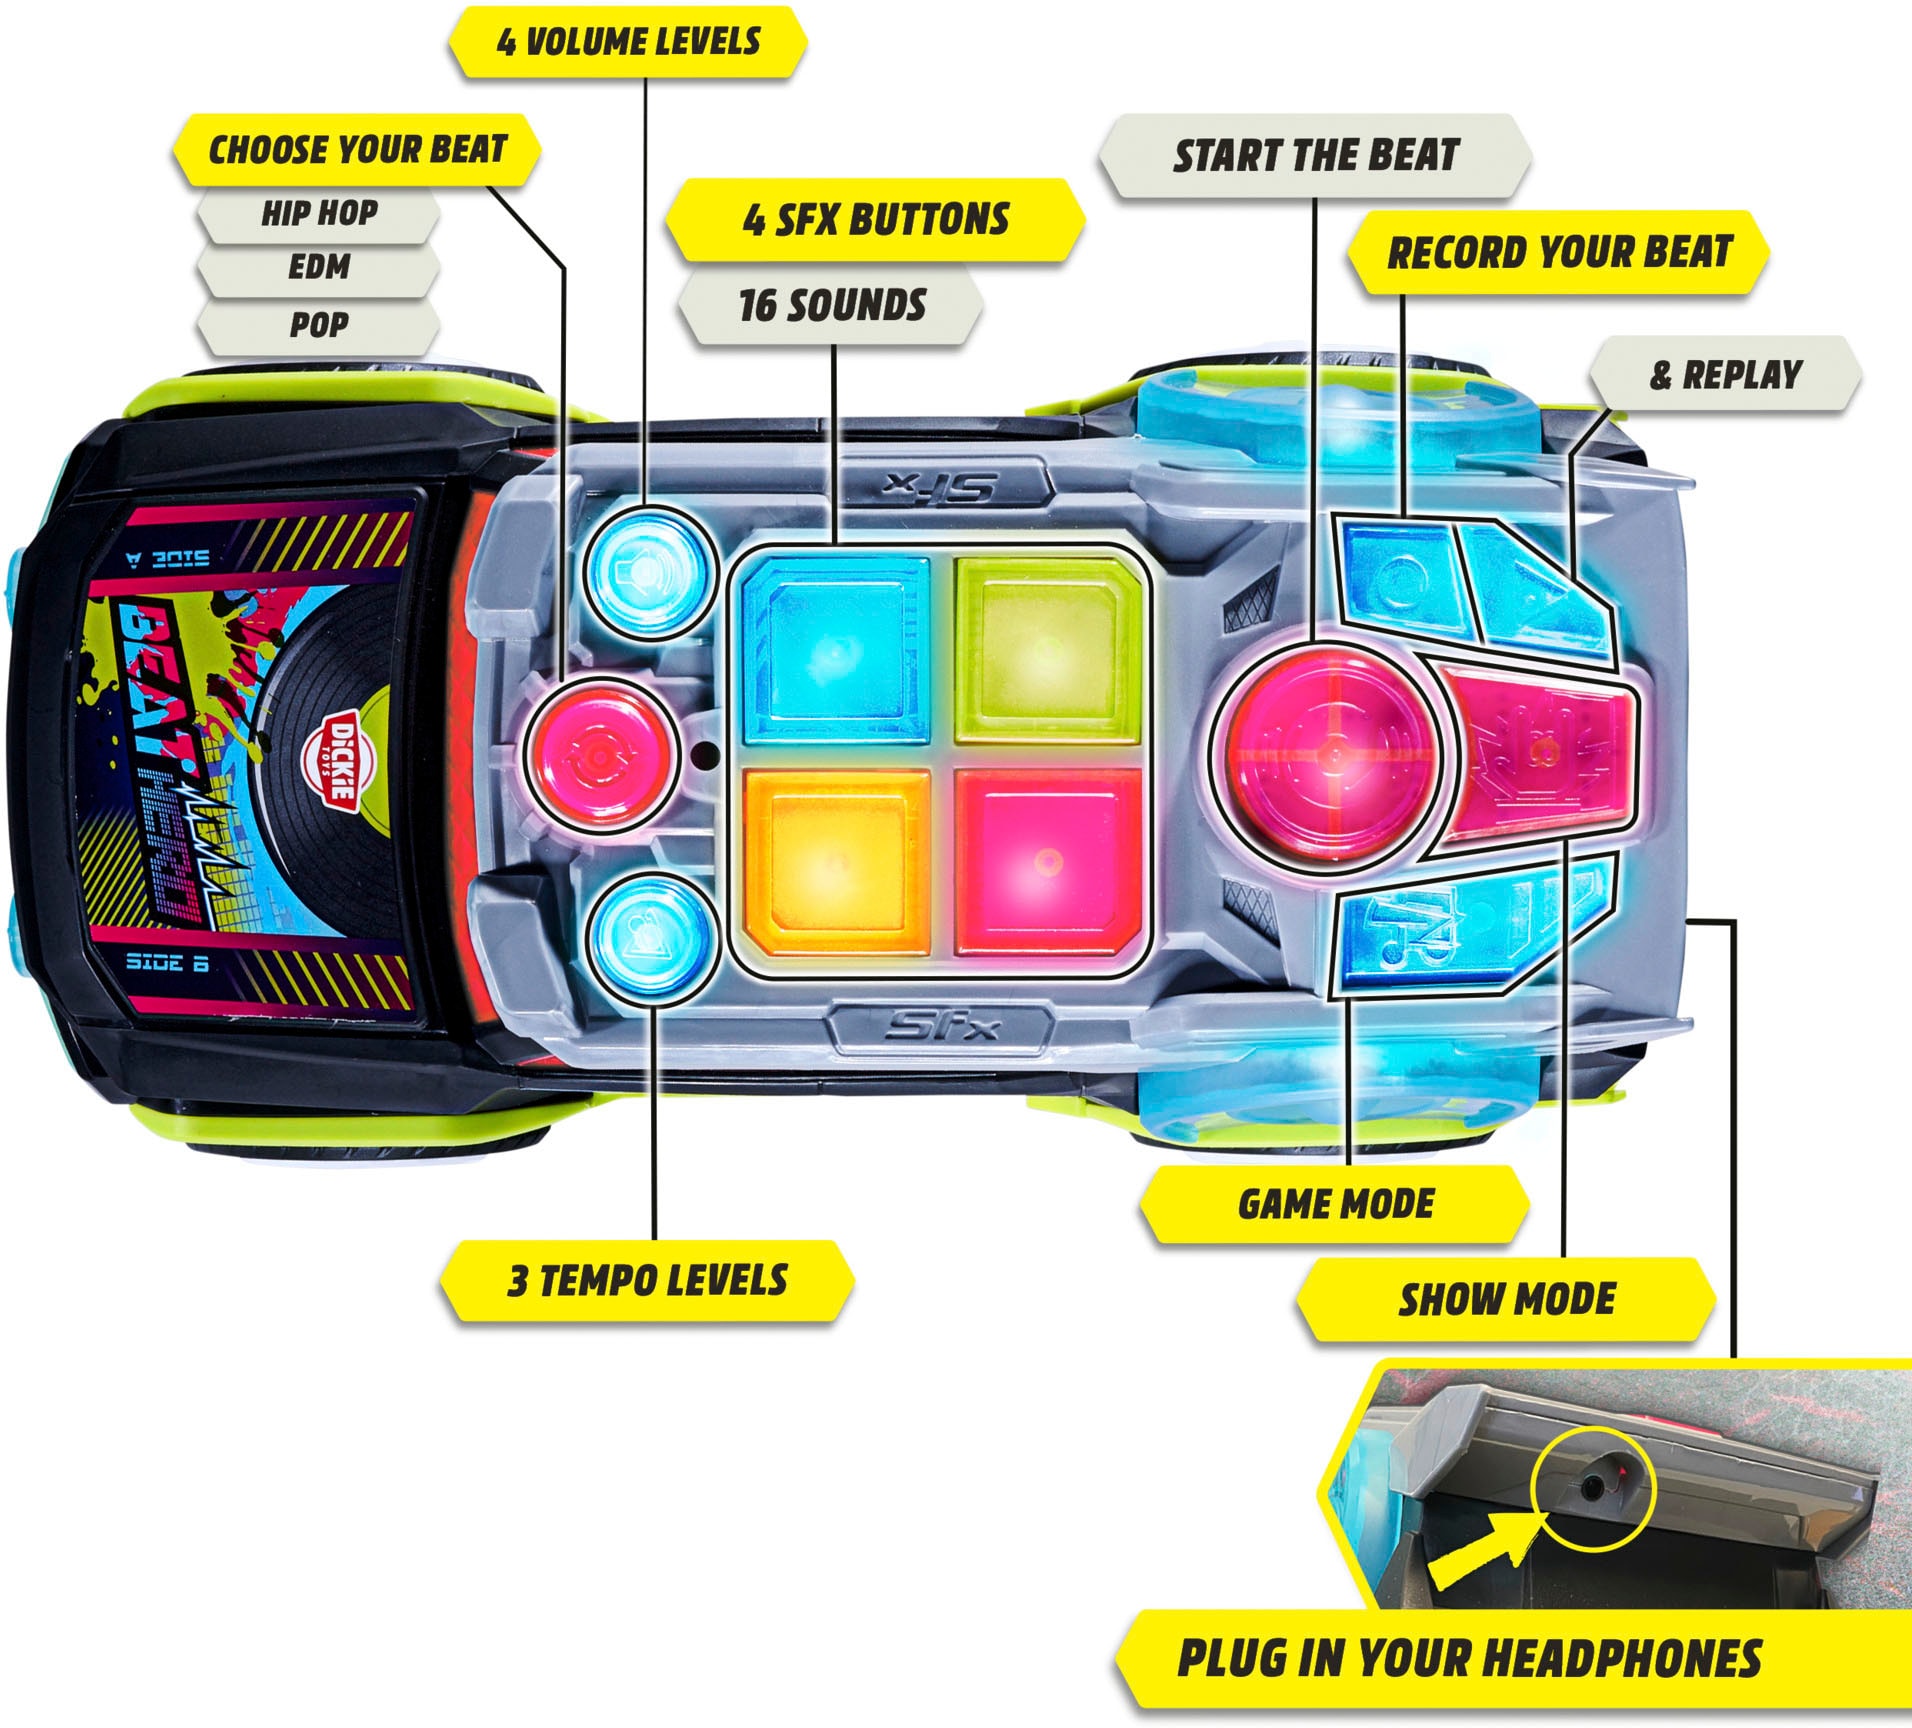 Carro de brinquedo Beat Hero, 32 cm, com luzes intermitentes e música,  STREETS N BEATZ, 3 modos de jogo, inclui pilhas ㅤ, MAJORETTE